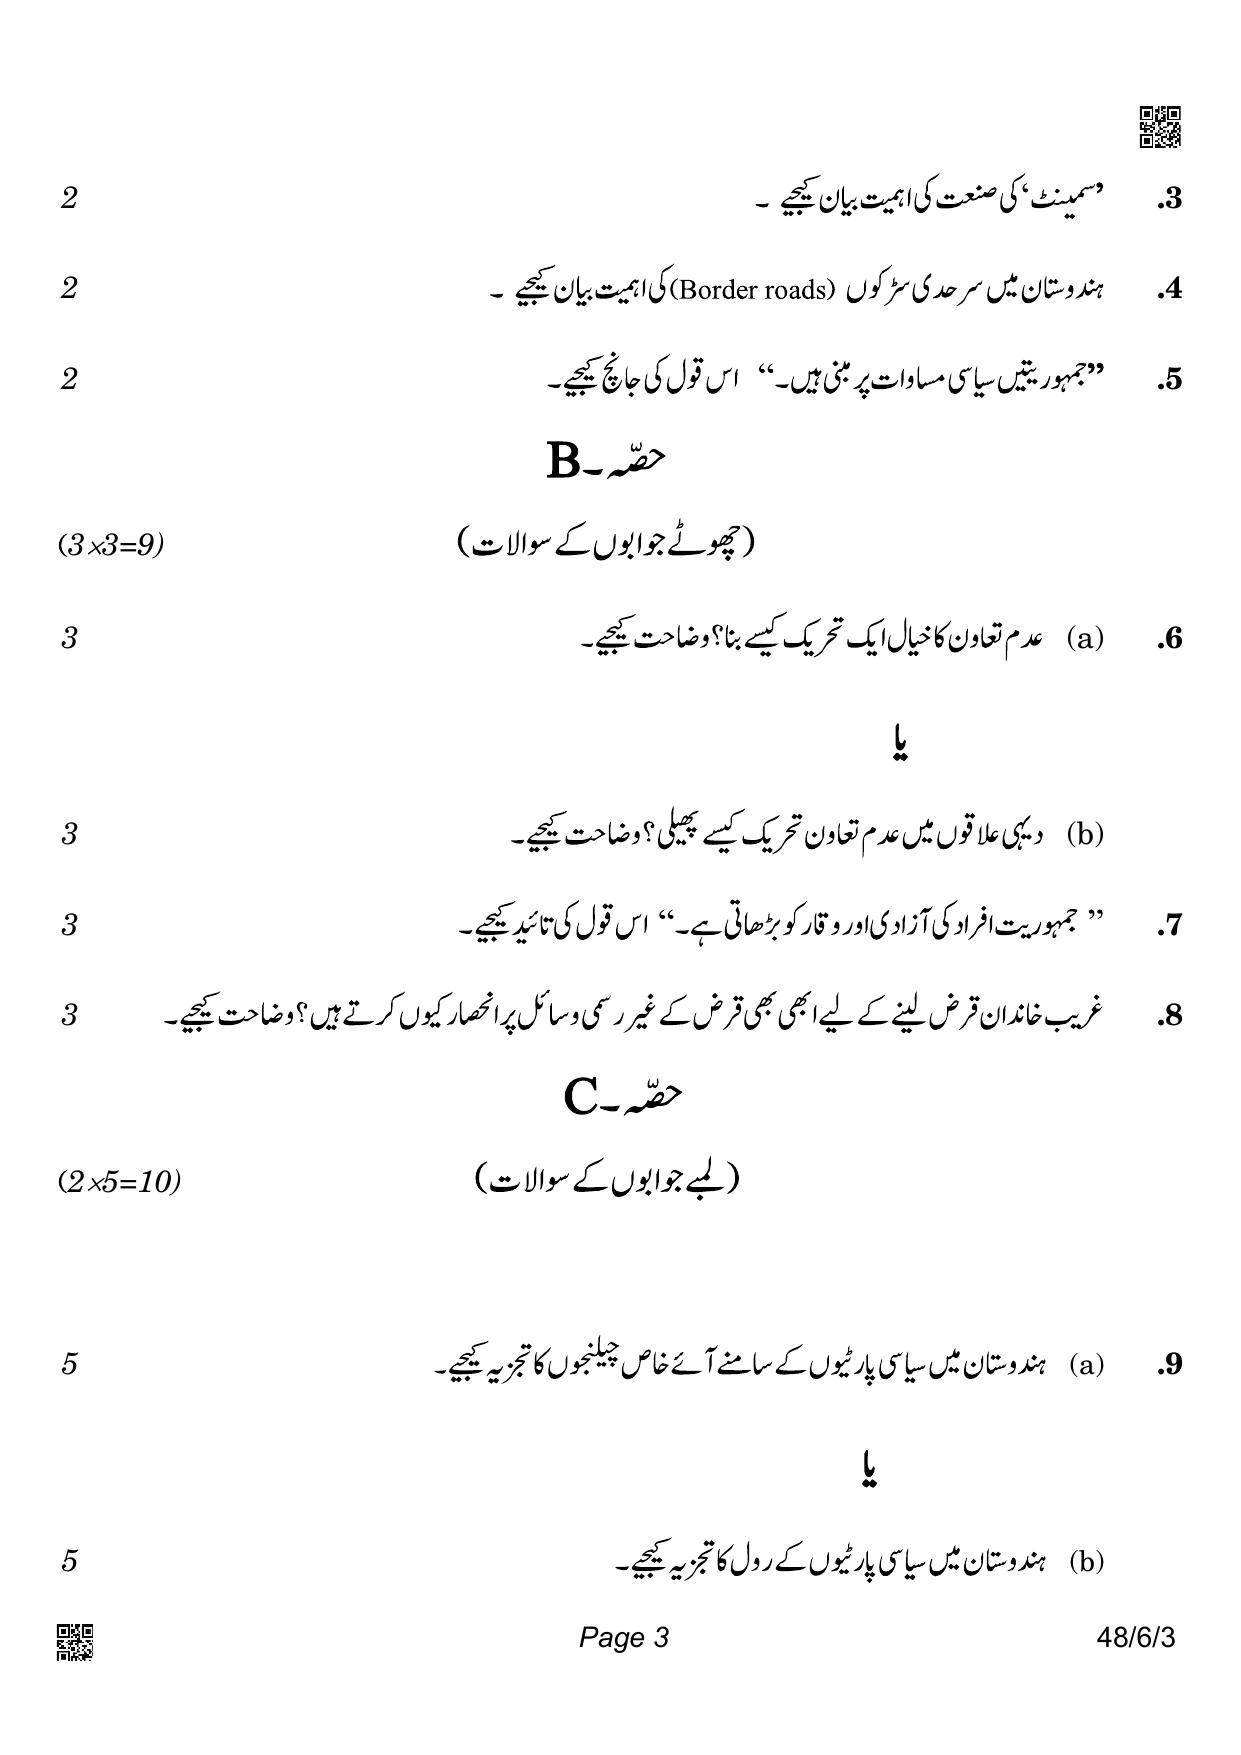 CBSE Class 10 48-6-3_Social Science Urdu Version 2022 Compartment Question Paper - Page 3